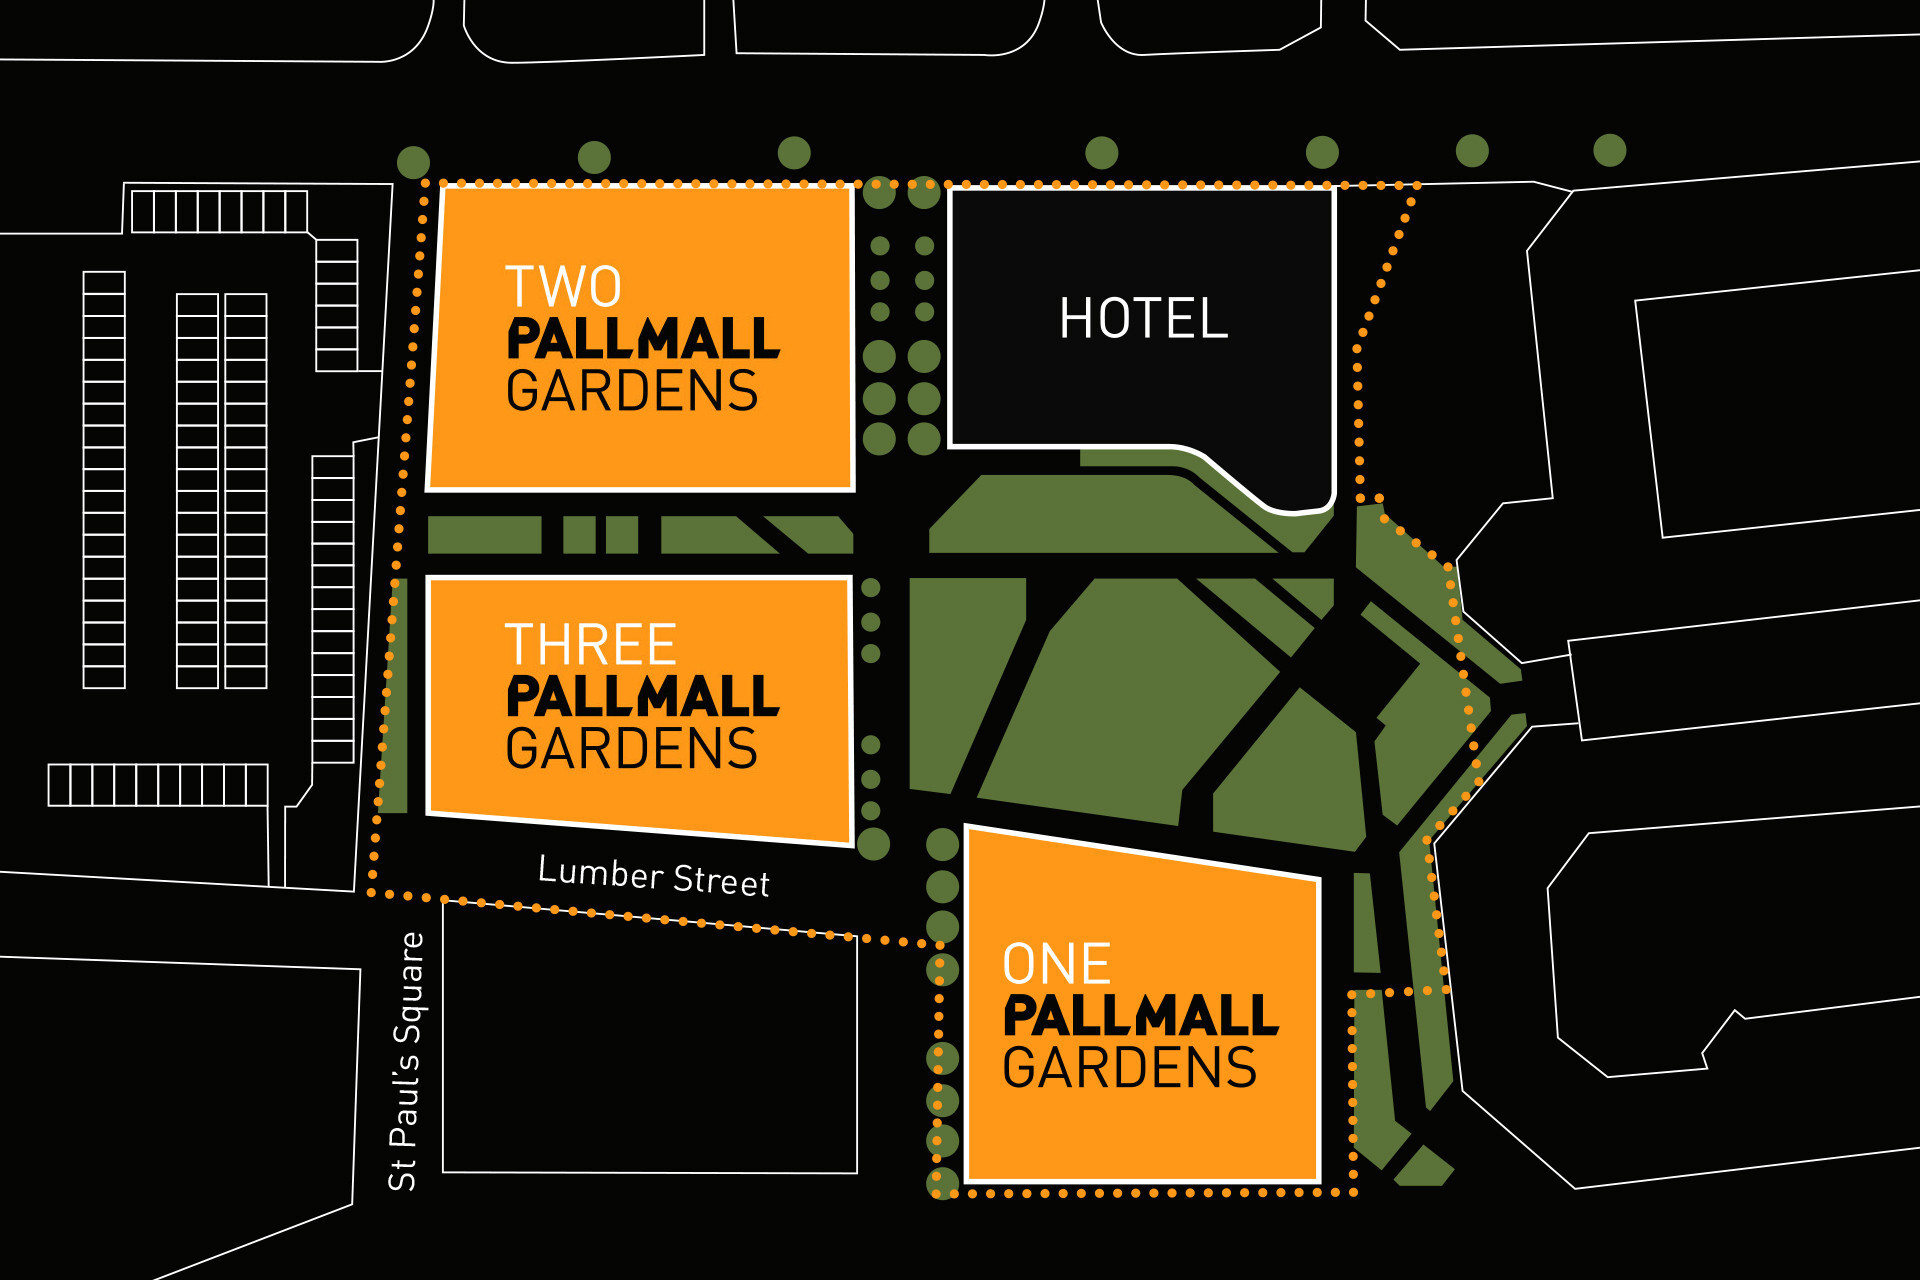 pall-mall-masterplan-web-5ec2ab79e65c2.jpg (original)